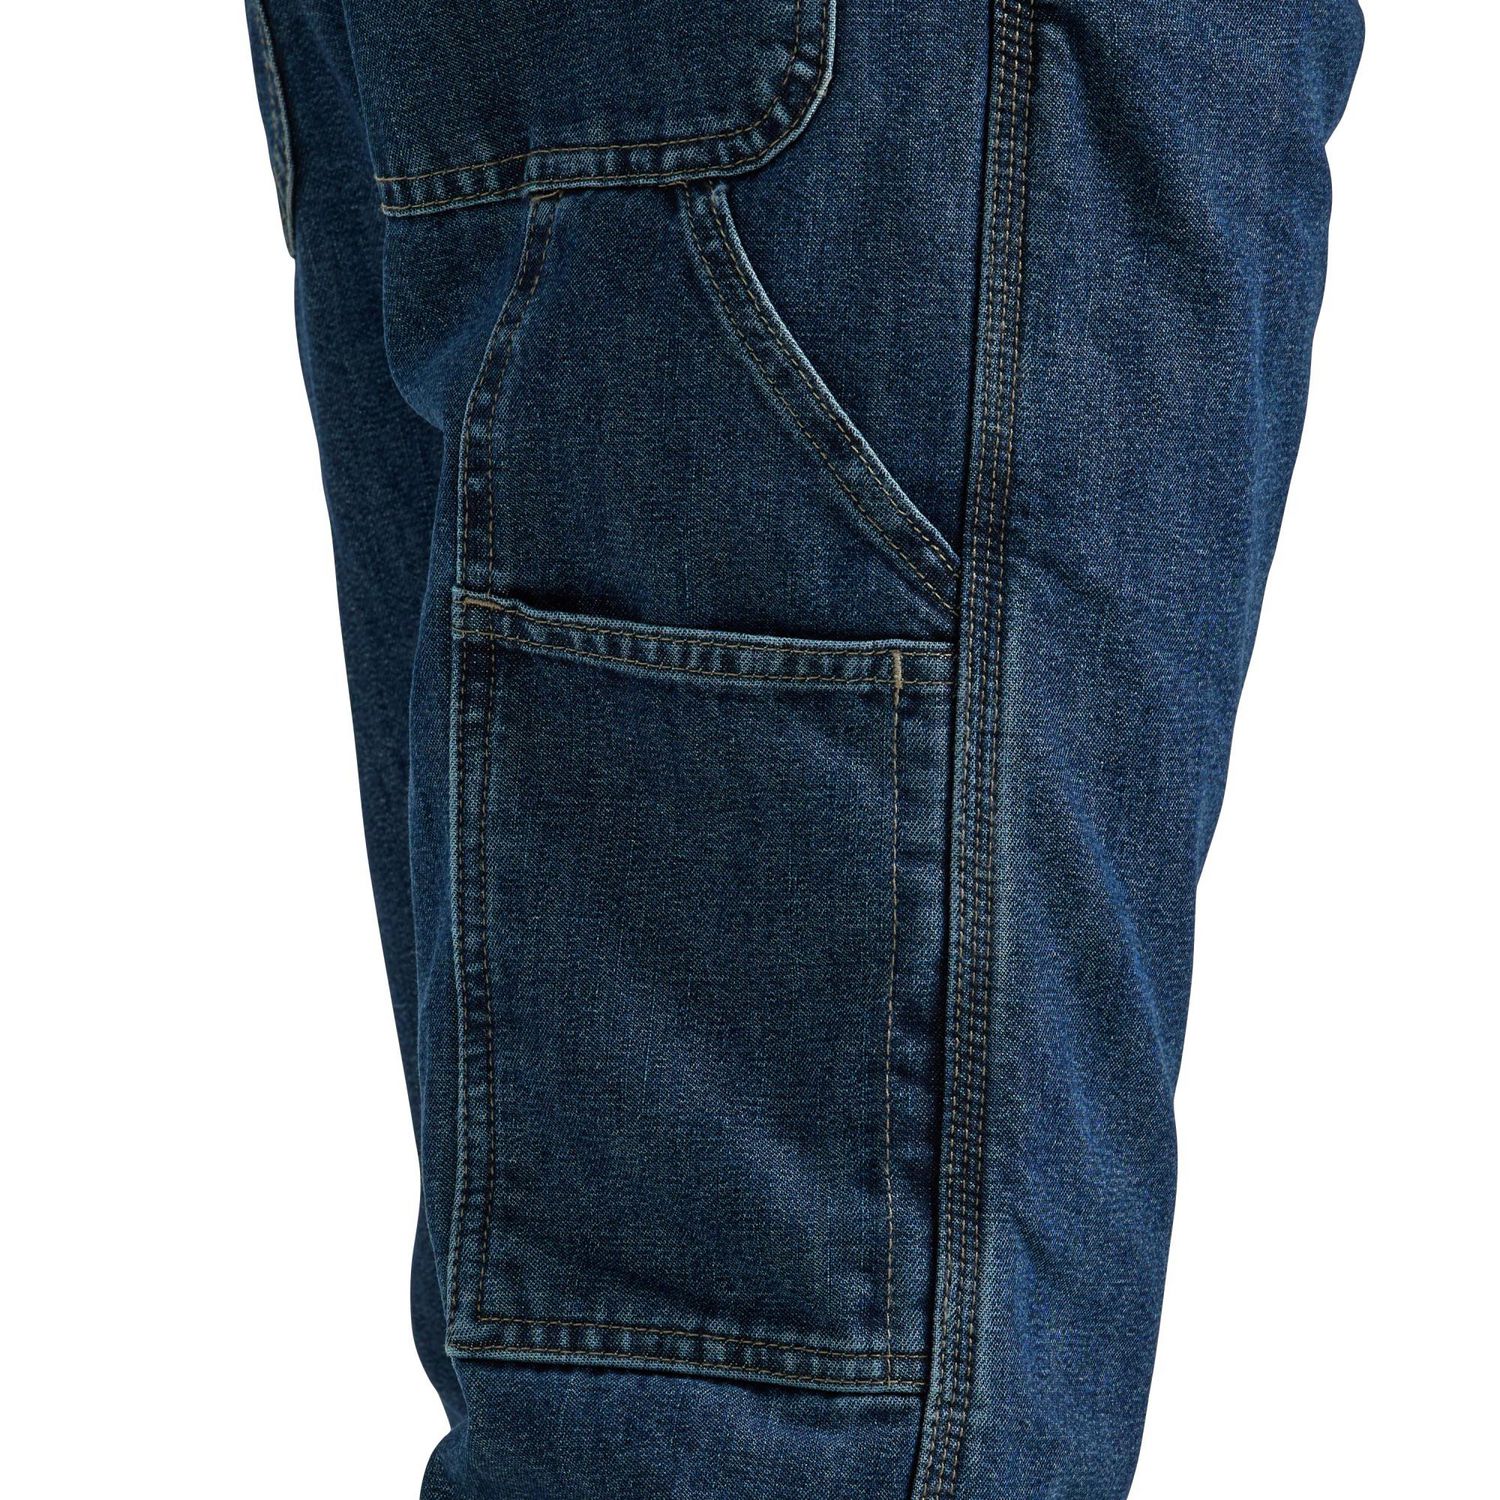 Fleece Lined Pants - Blue - Size 38/32 from JACKFIELD